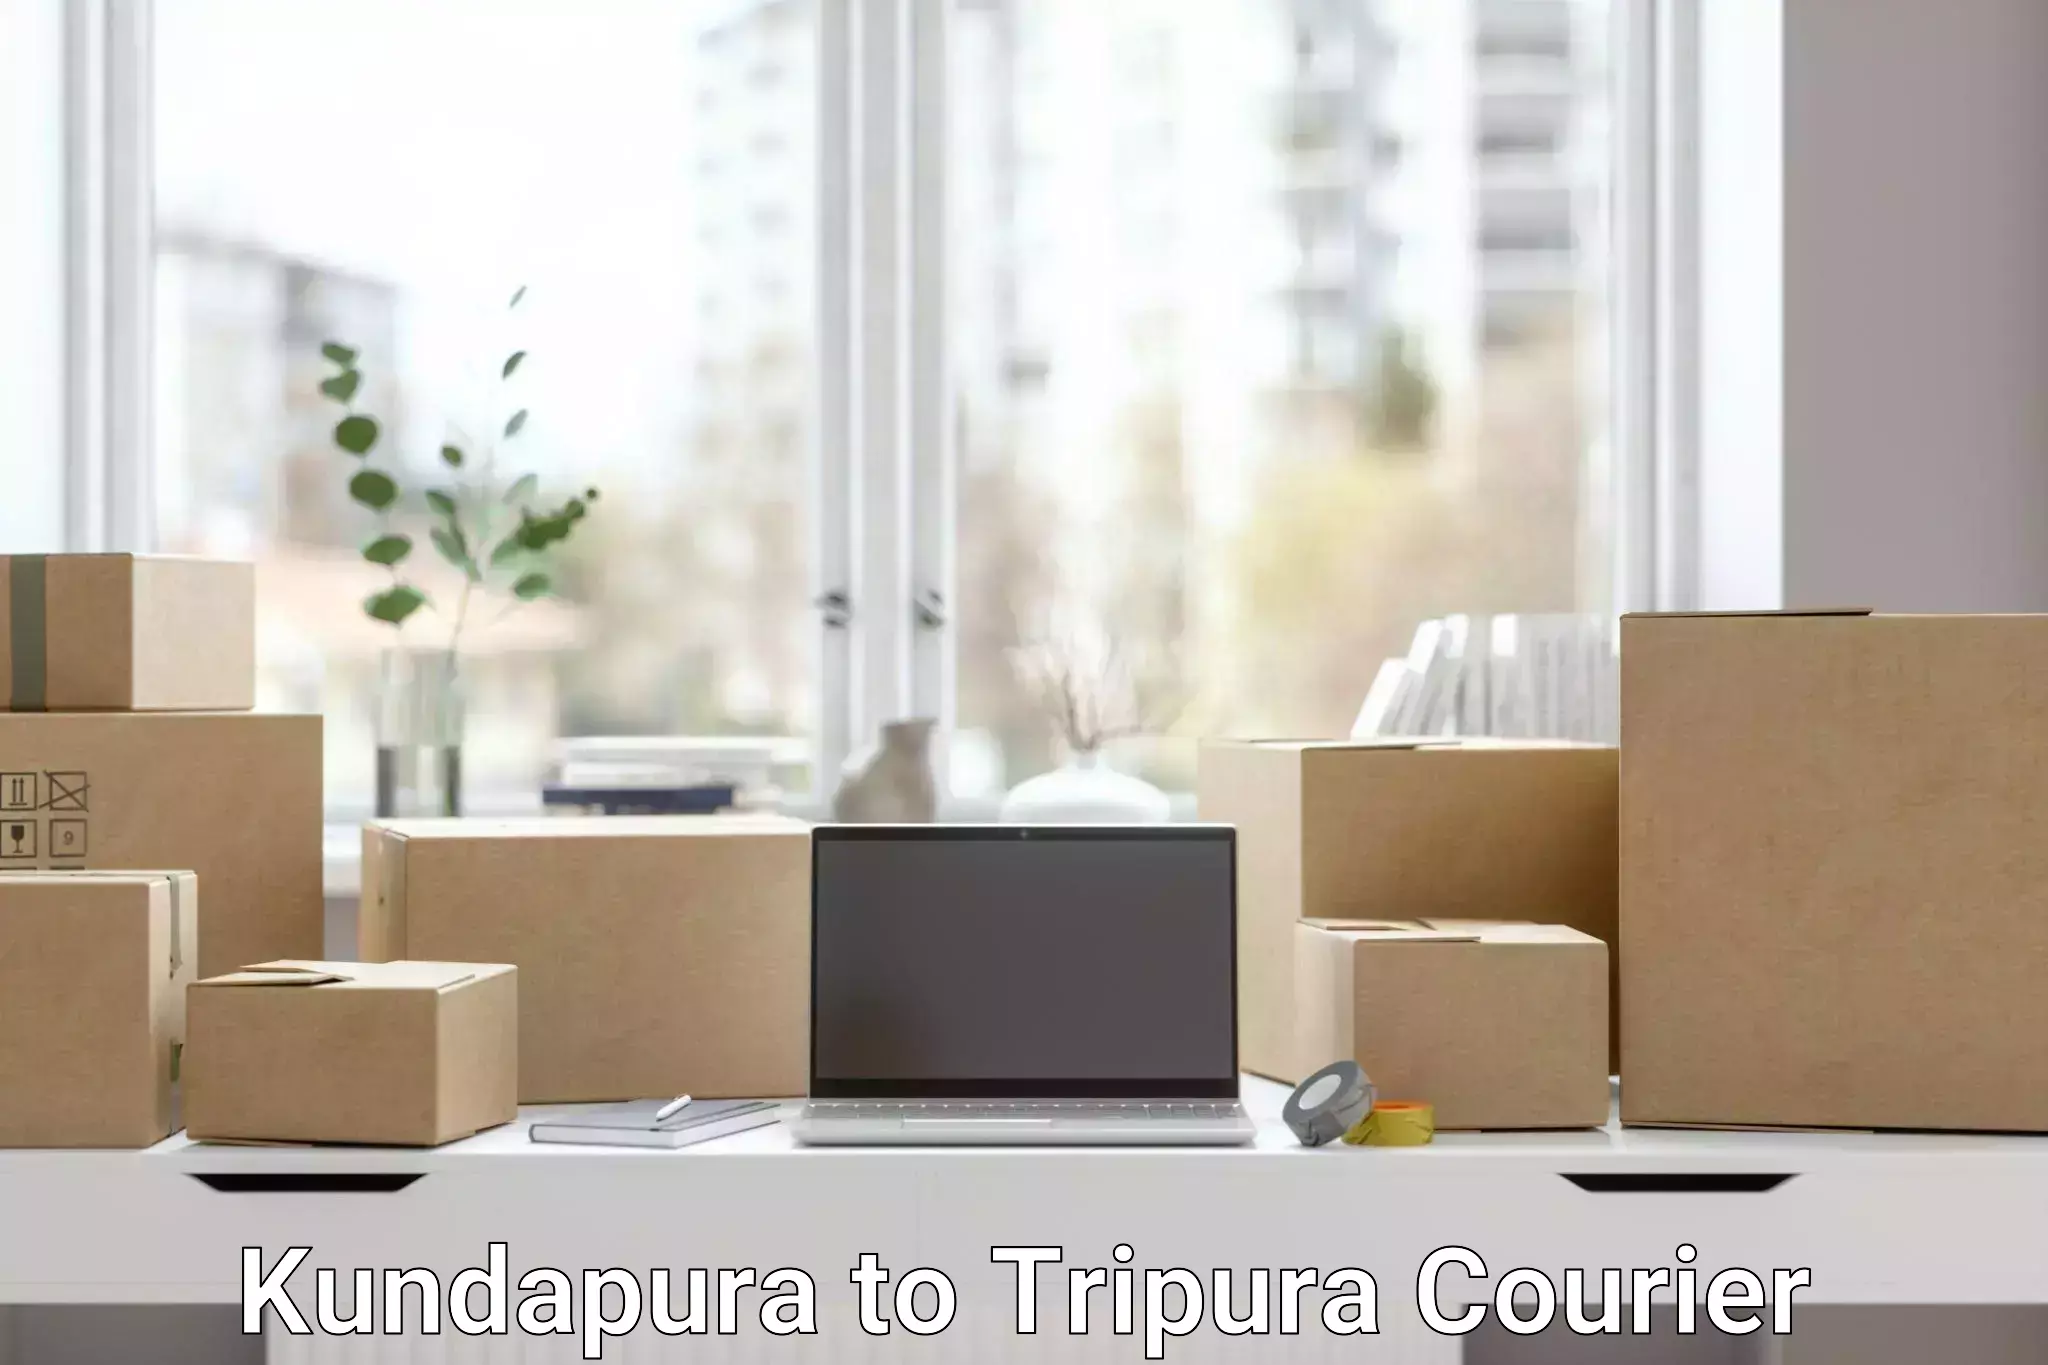 24-hour courier service Kundapura to Tripura